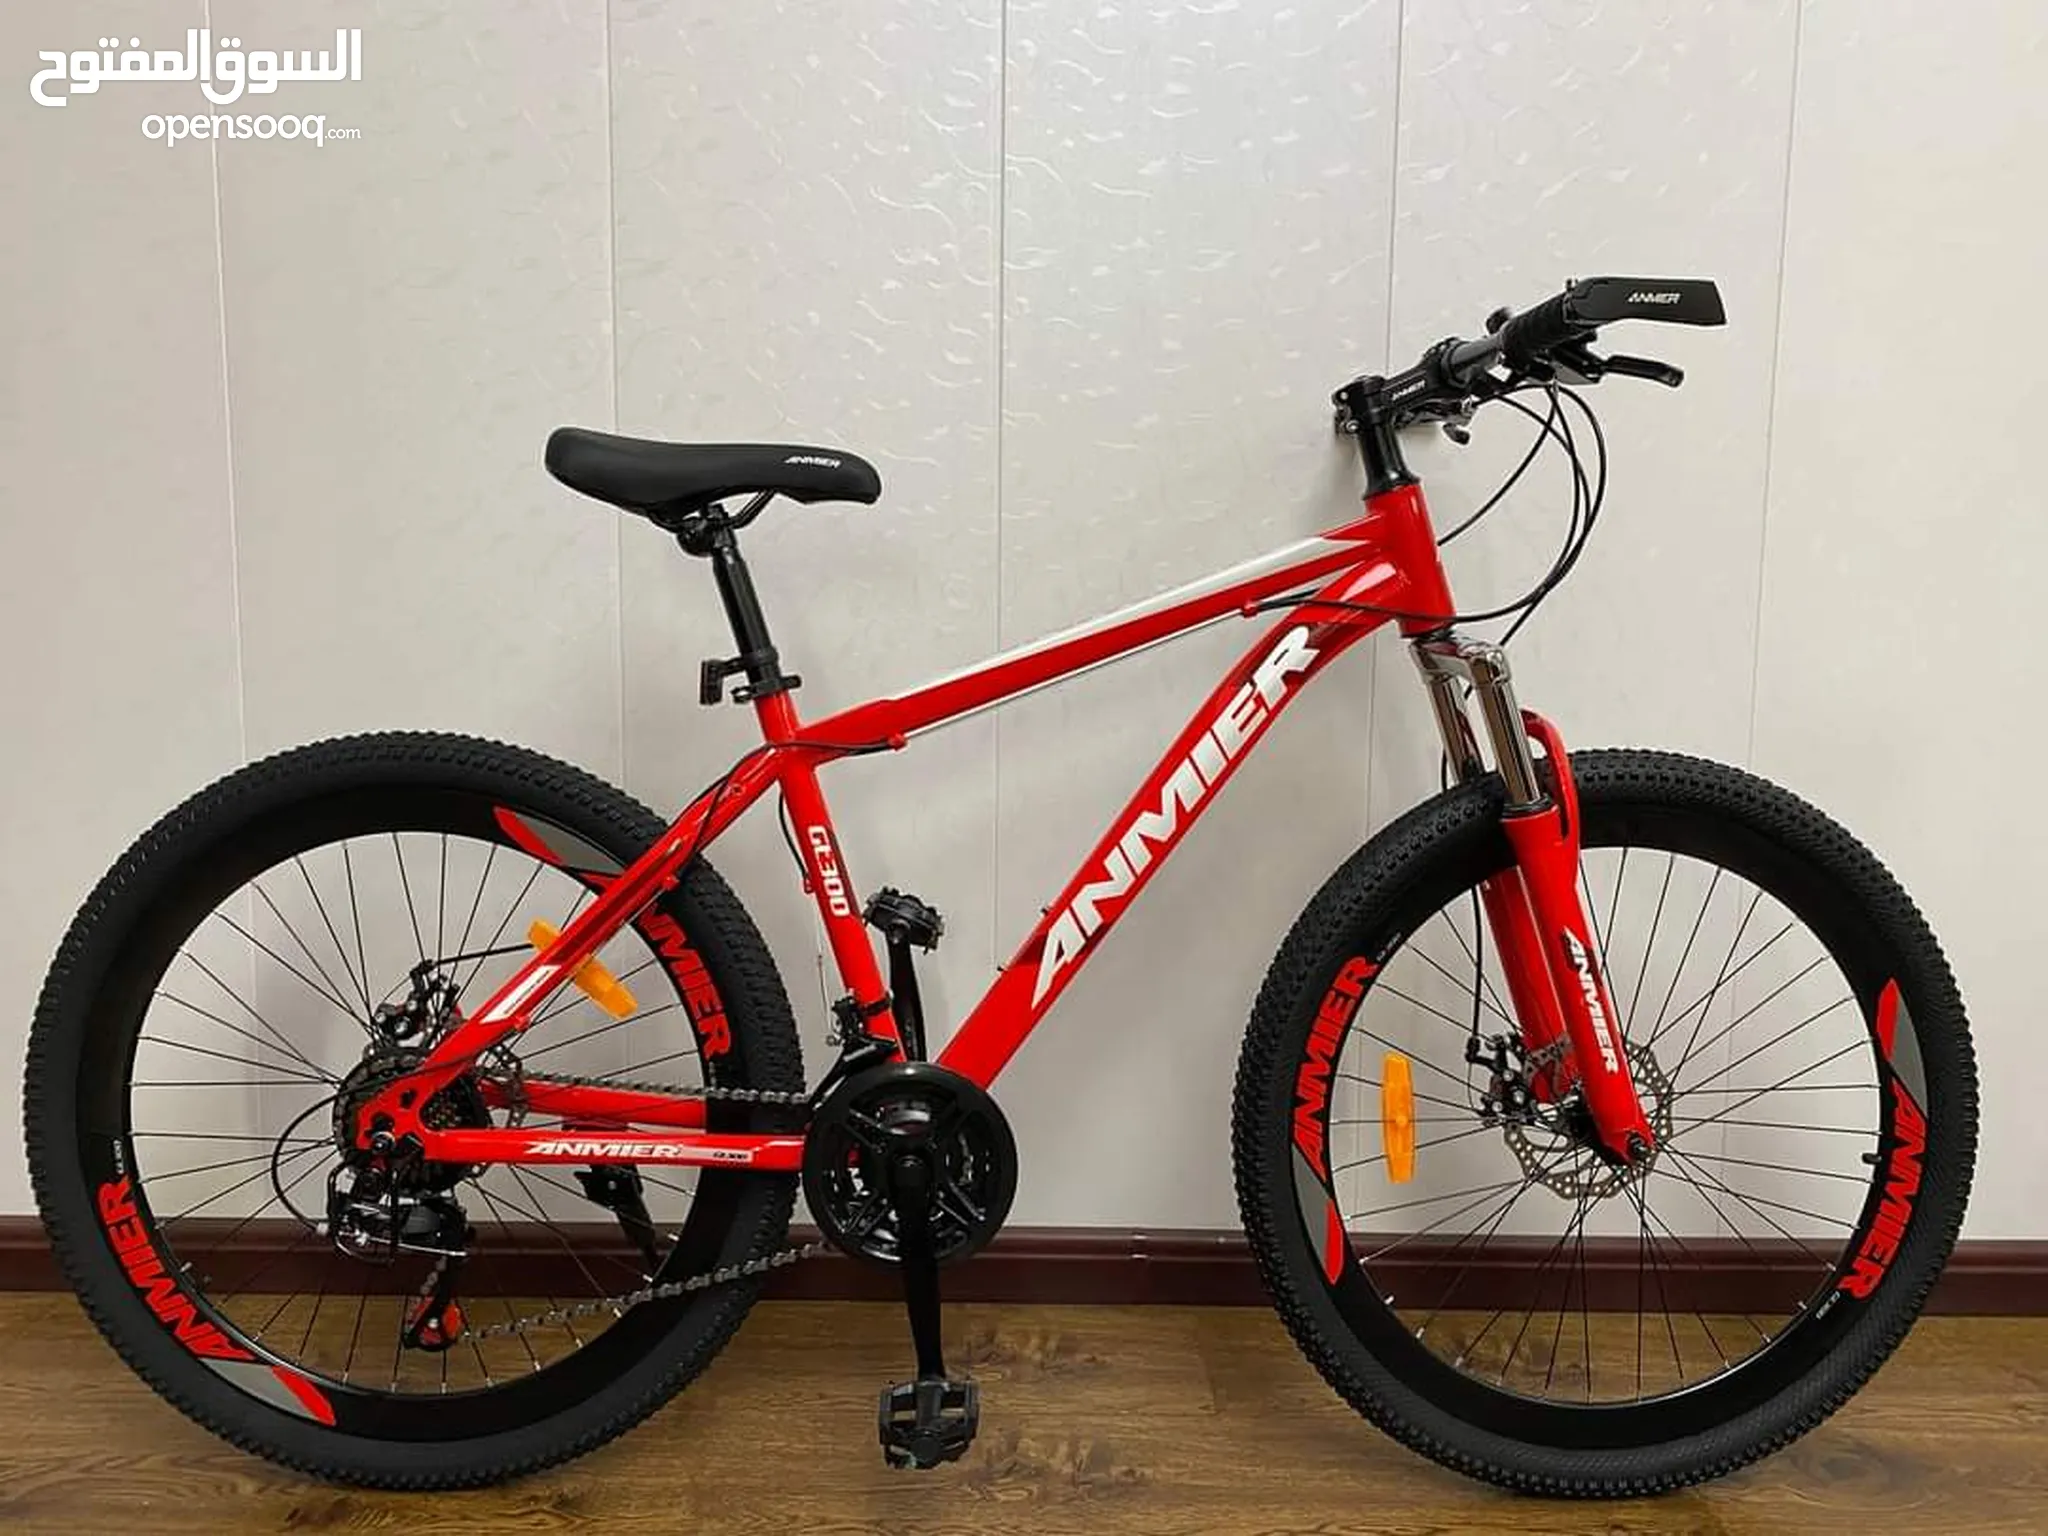 دراجات هوائية للبيع : دراجات على الطرق : جبلية : للأطفال : قطع غيار  واكسسوار : ارخص الاسعار في الأردن